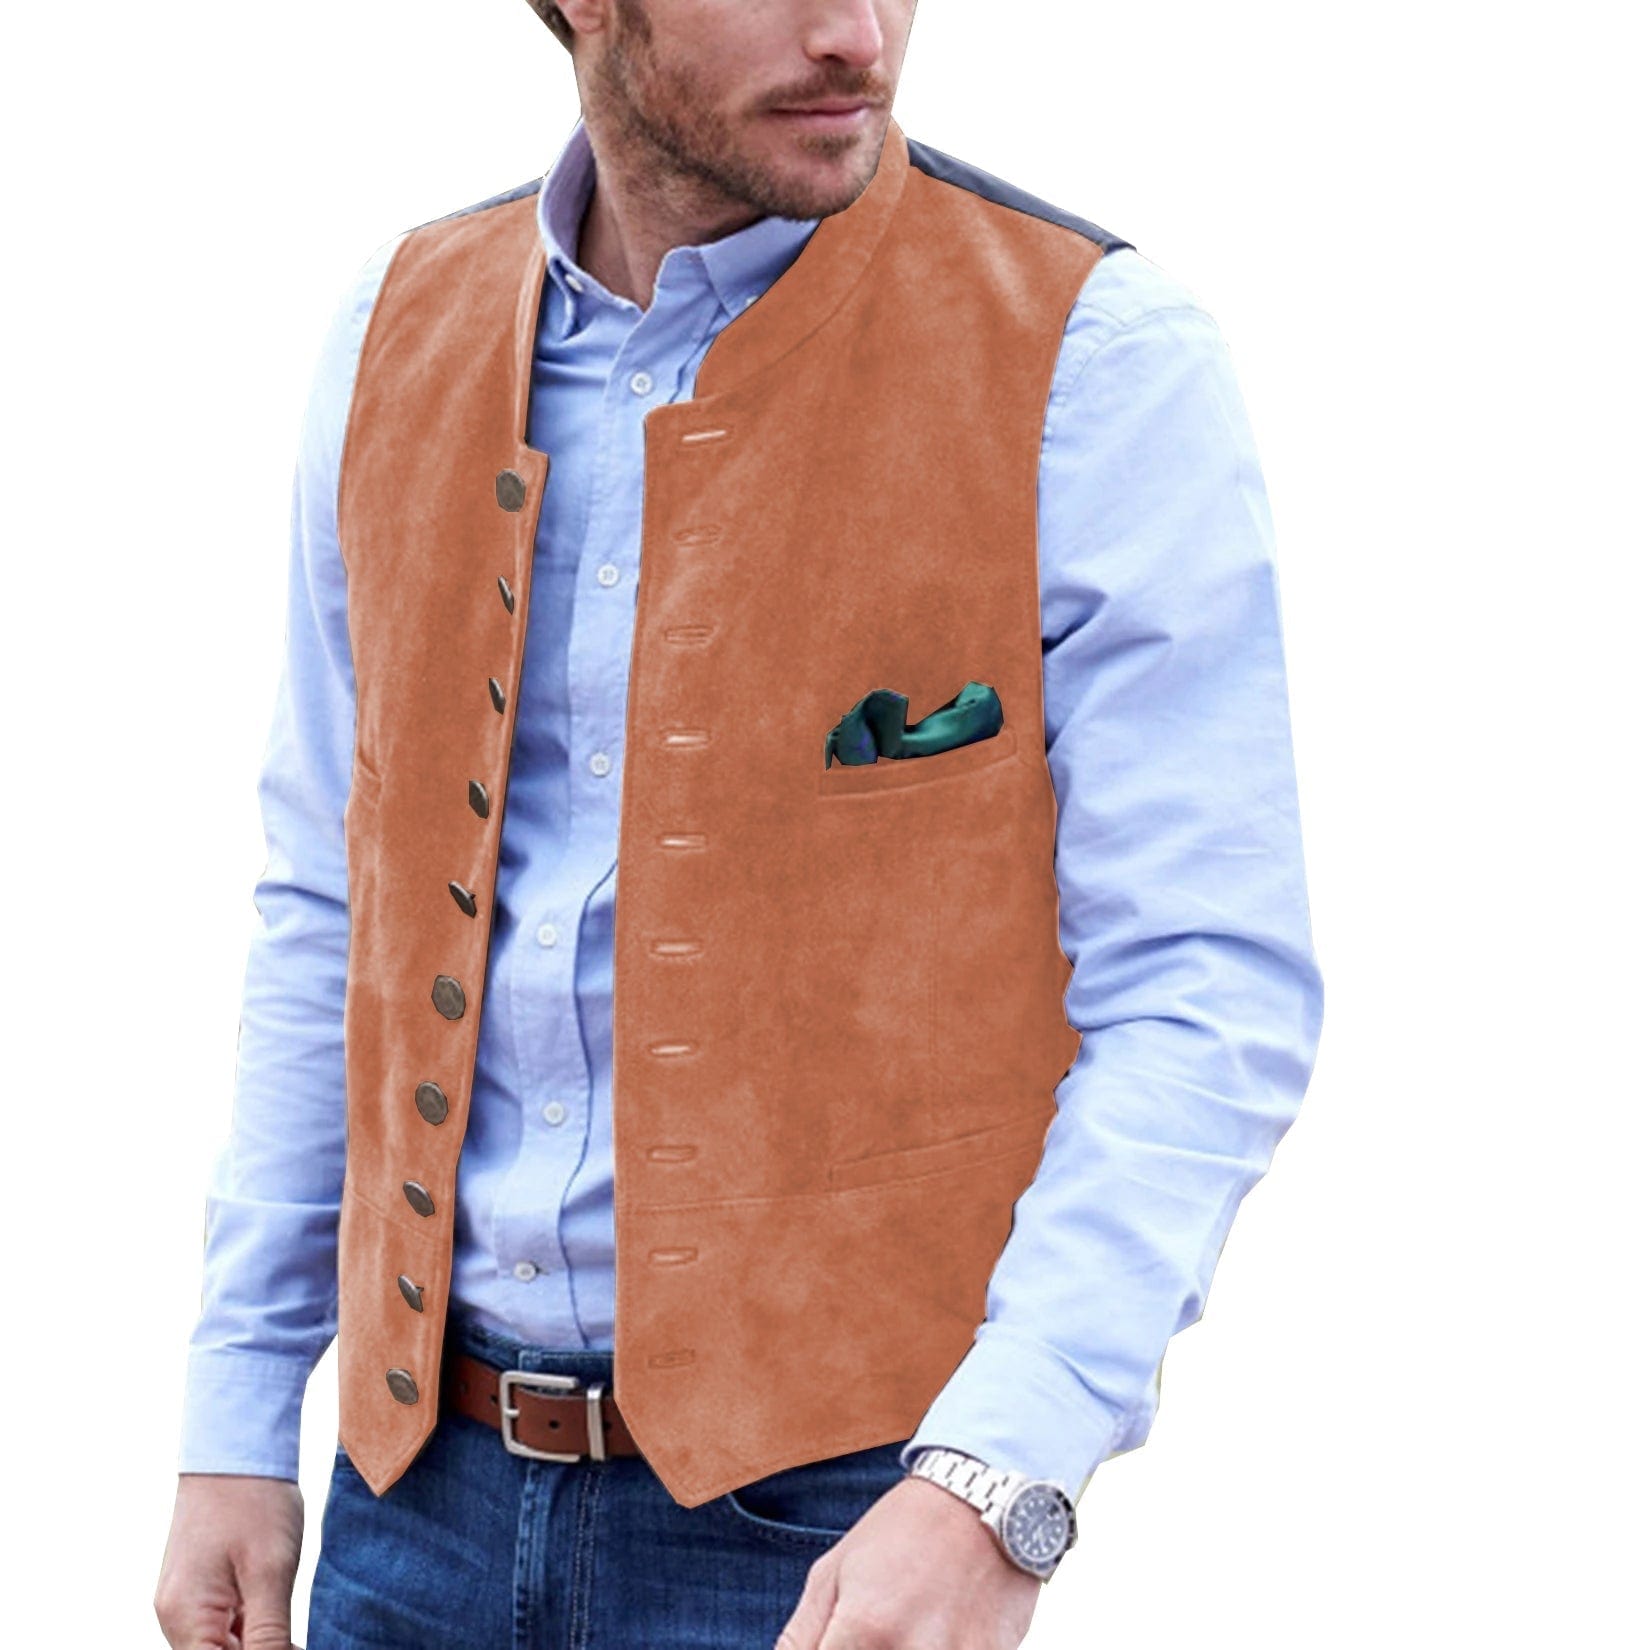 ceehuteey Men's Stand Collar Suede Fashion Waistcoat Denim Jacket